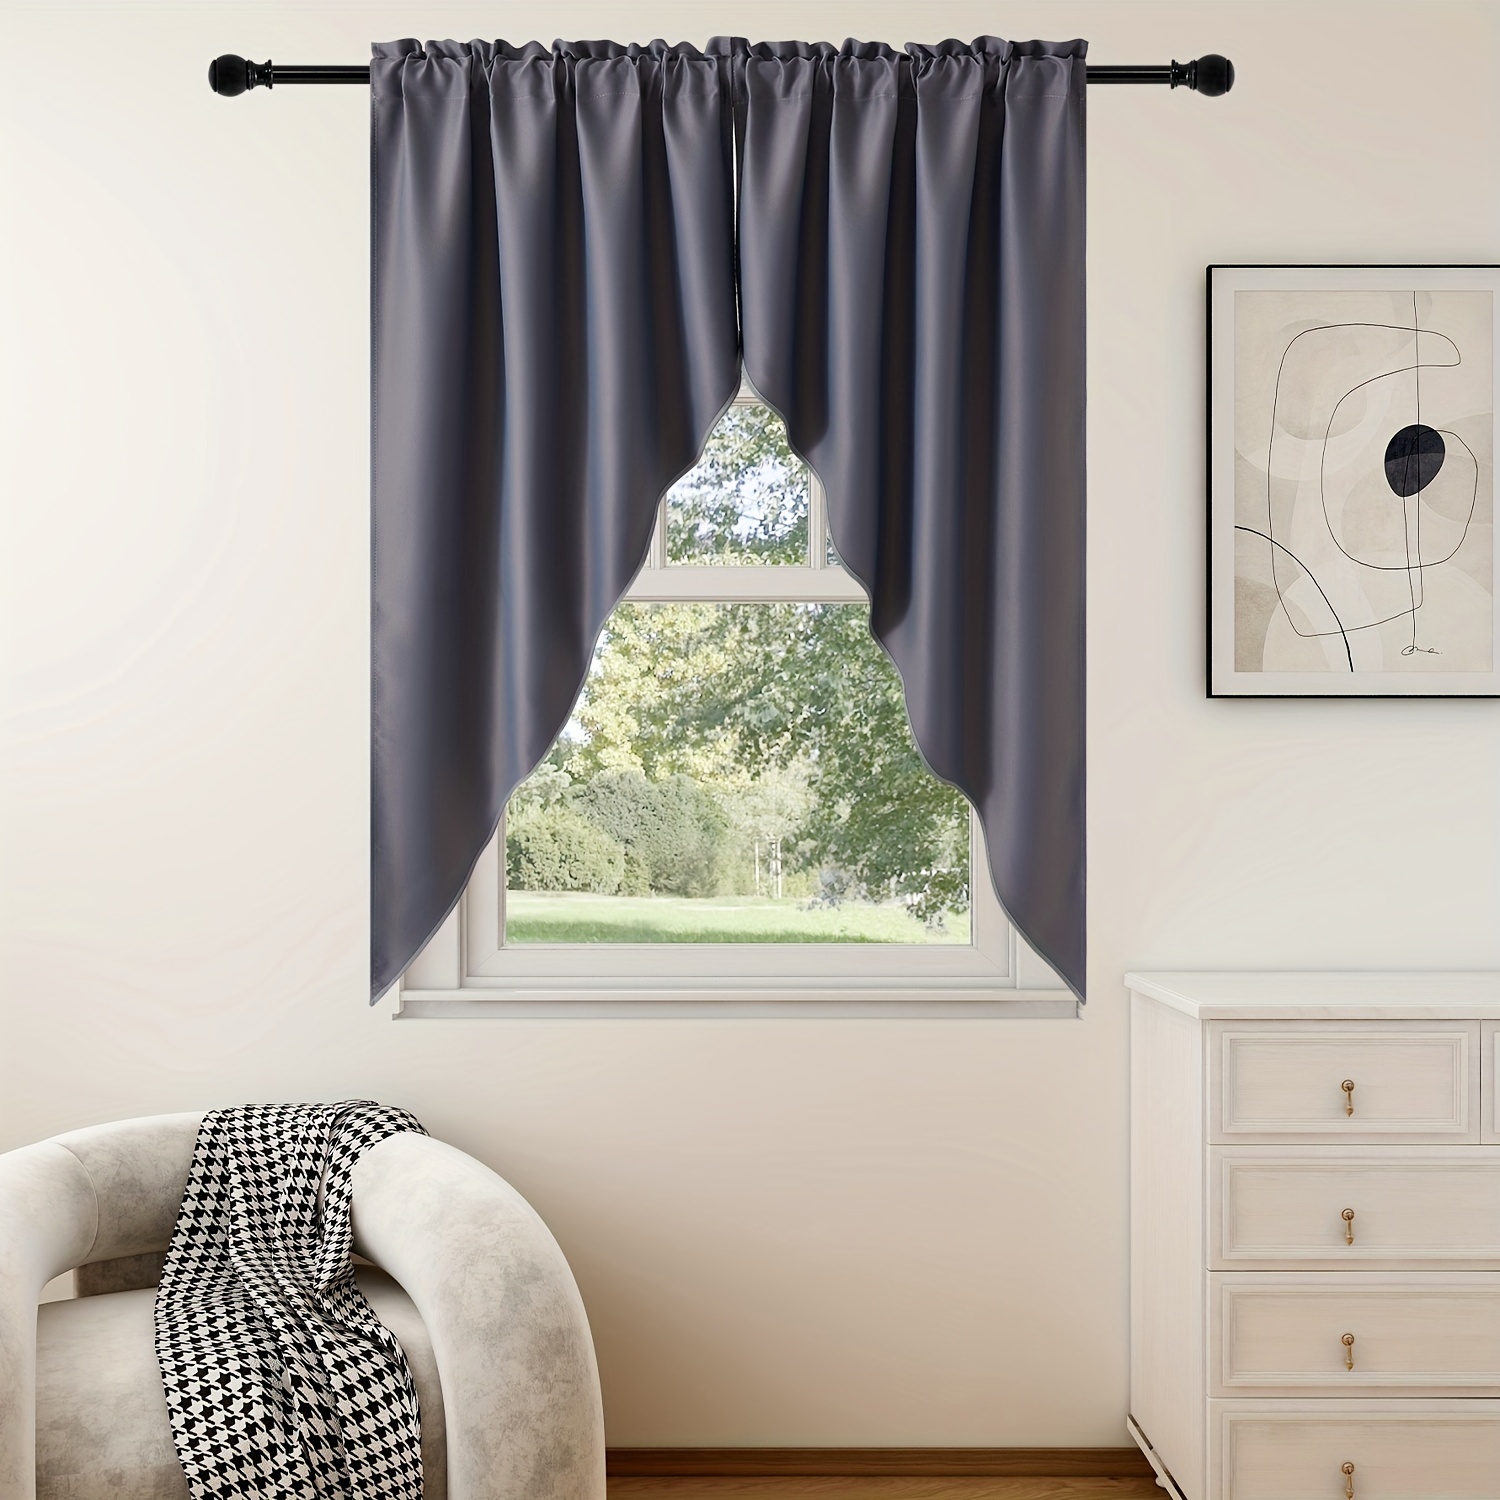 Cortinas opacas cortas para dormitorio y cocina, cortina sólida